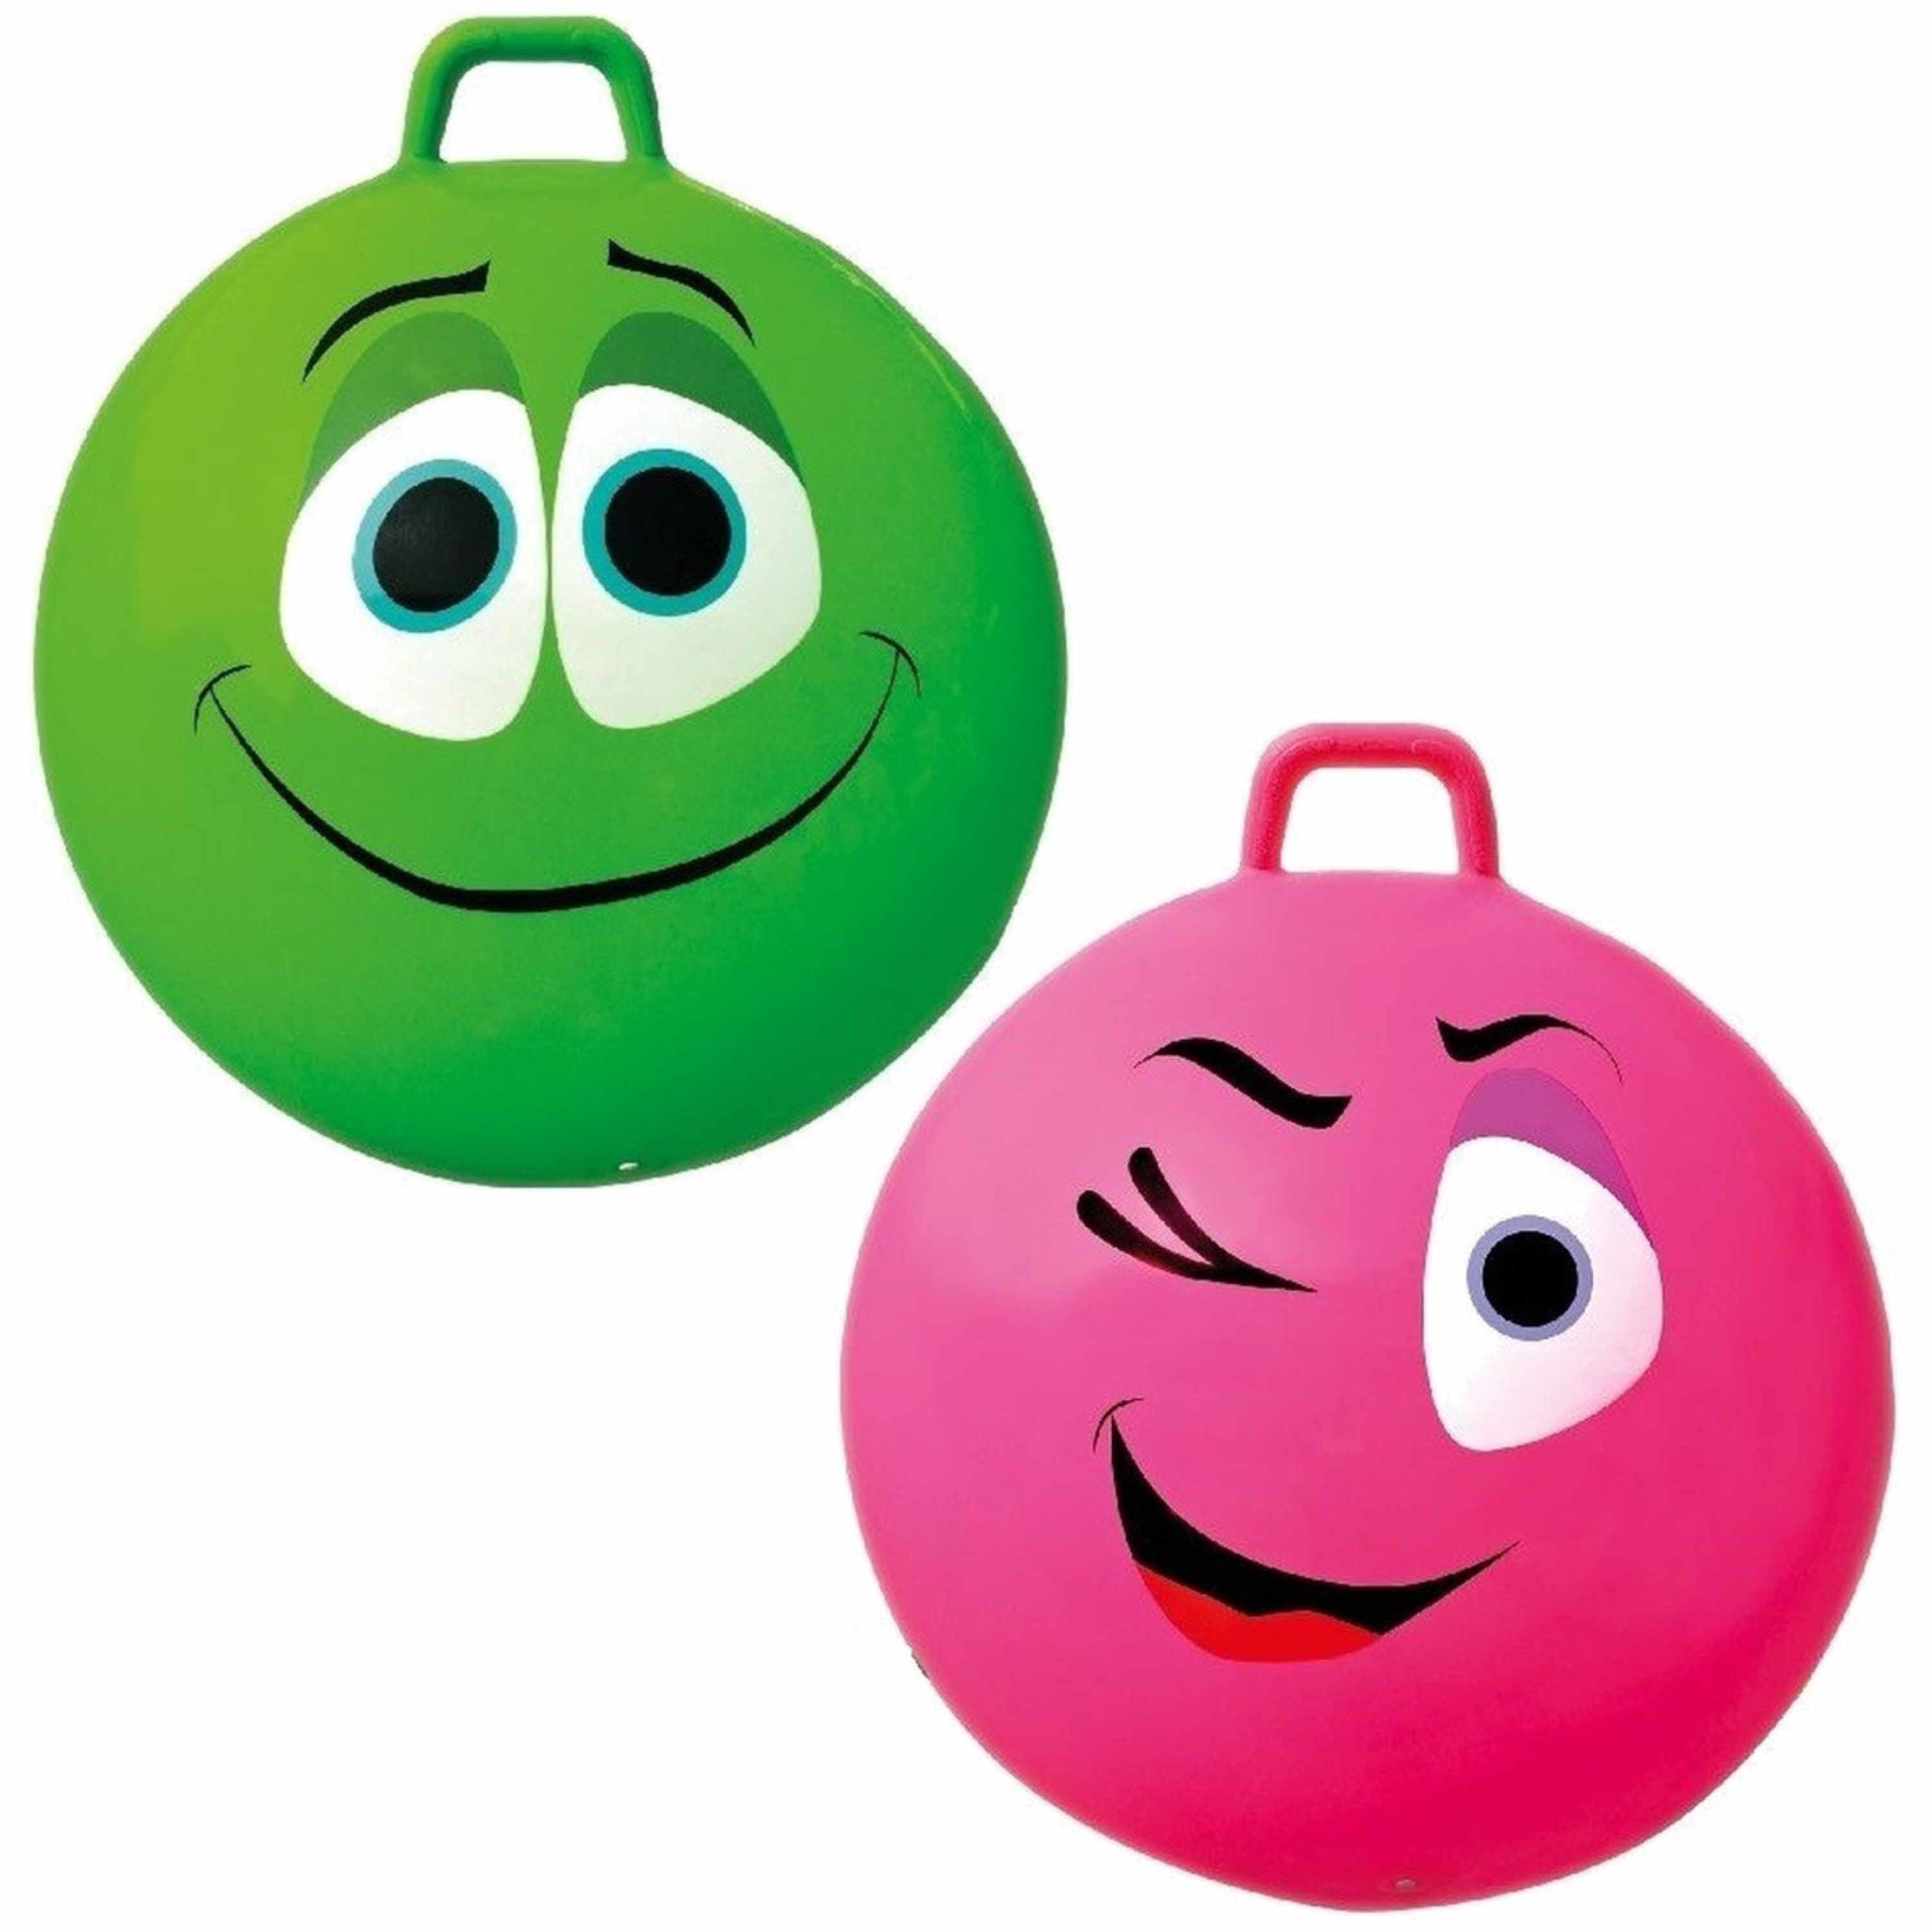 2x stuks speelgoed Skippyballen met funny faces gezicht groen en roze 65 cm